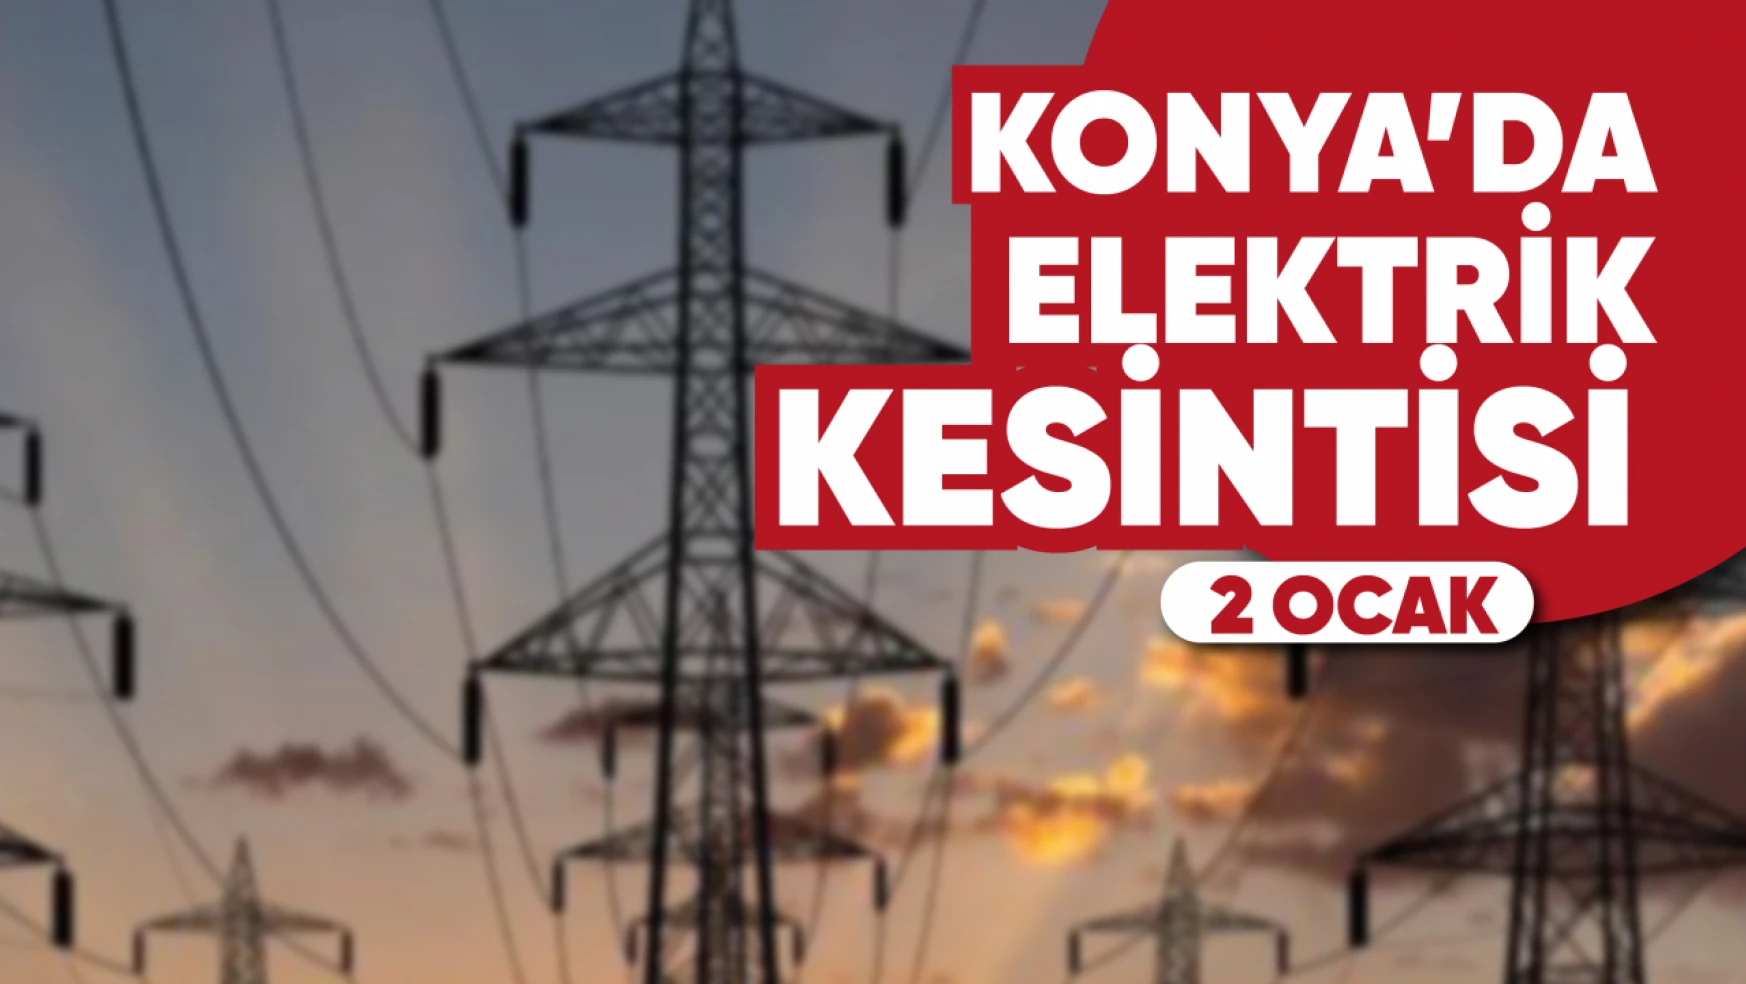 Konya'da elektrik kesintisi yaşanacak mahalle ve sokaklar (2 Ocak)